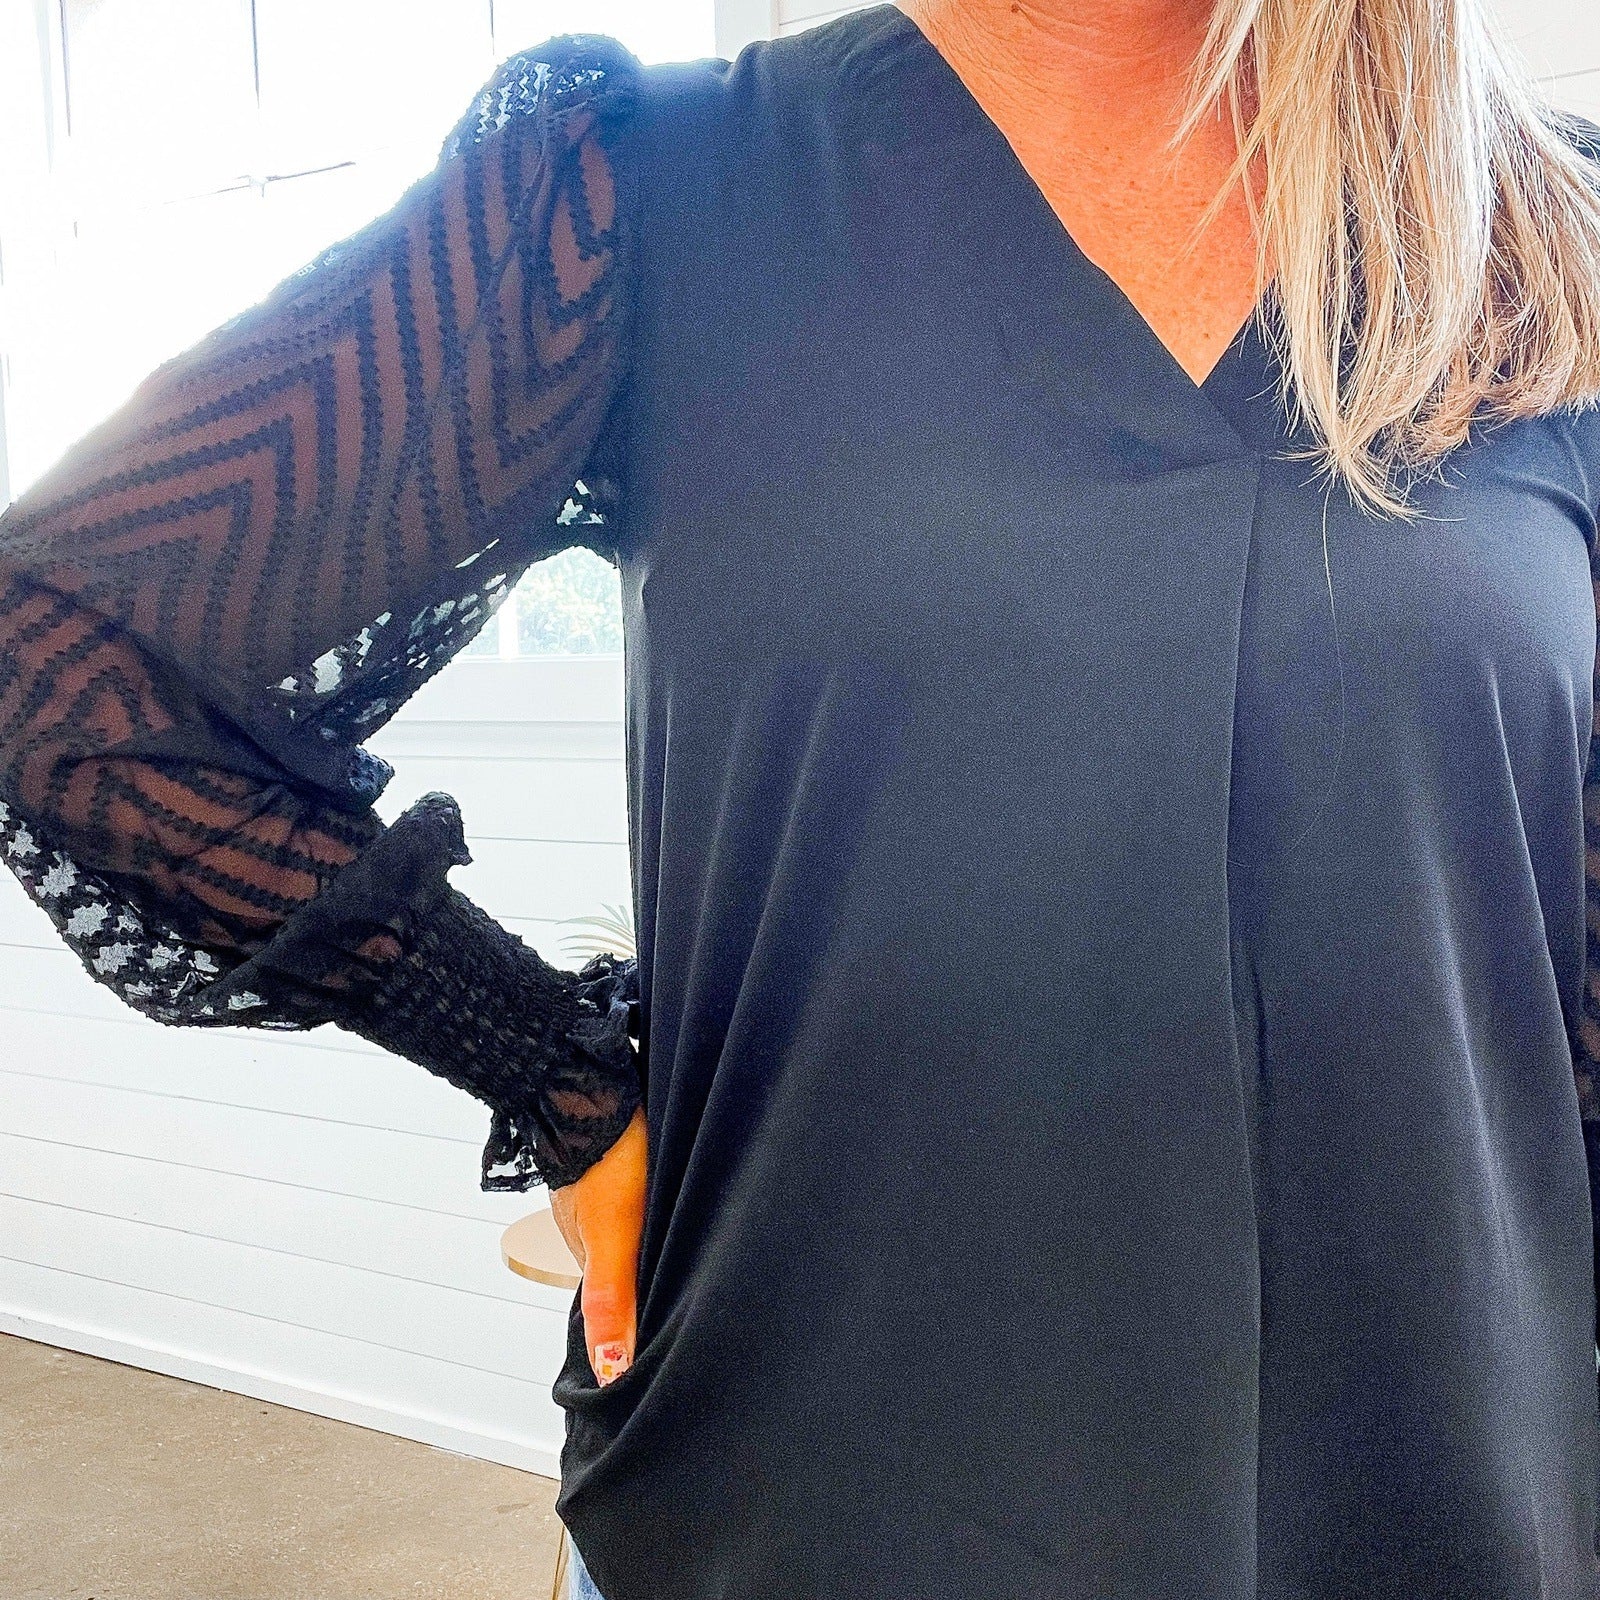 Sheryl Sheer Sleeve V-Neck Top in Black